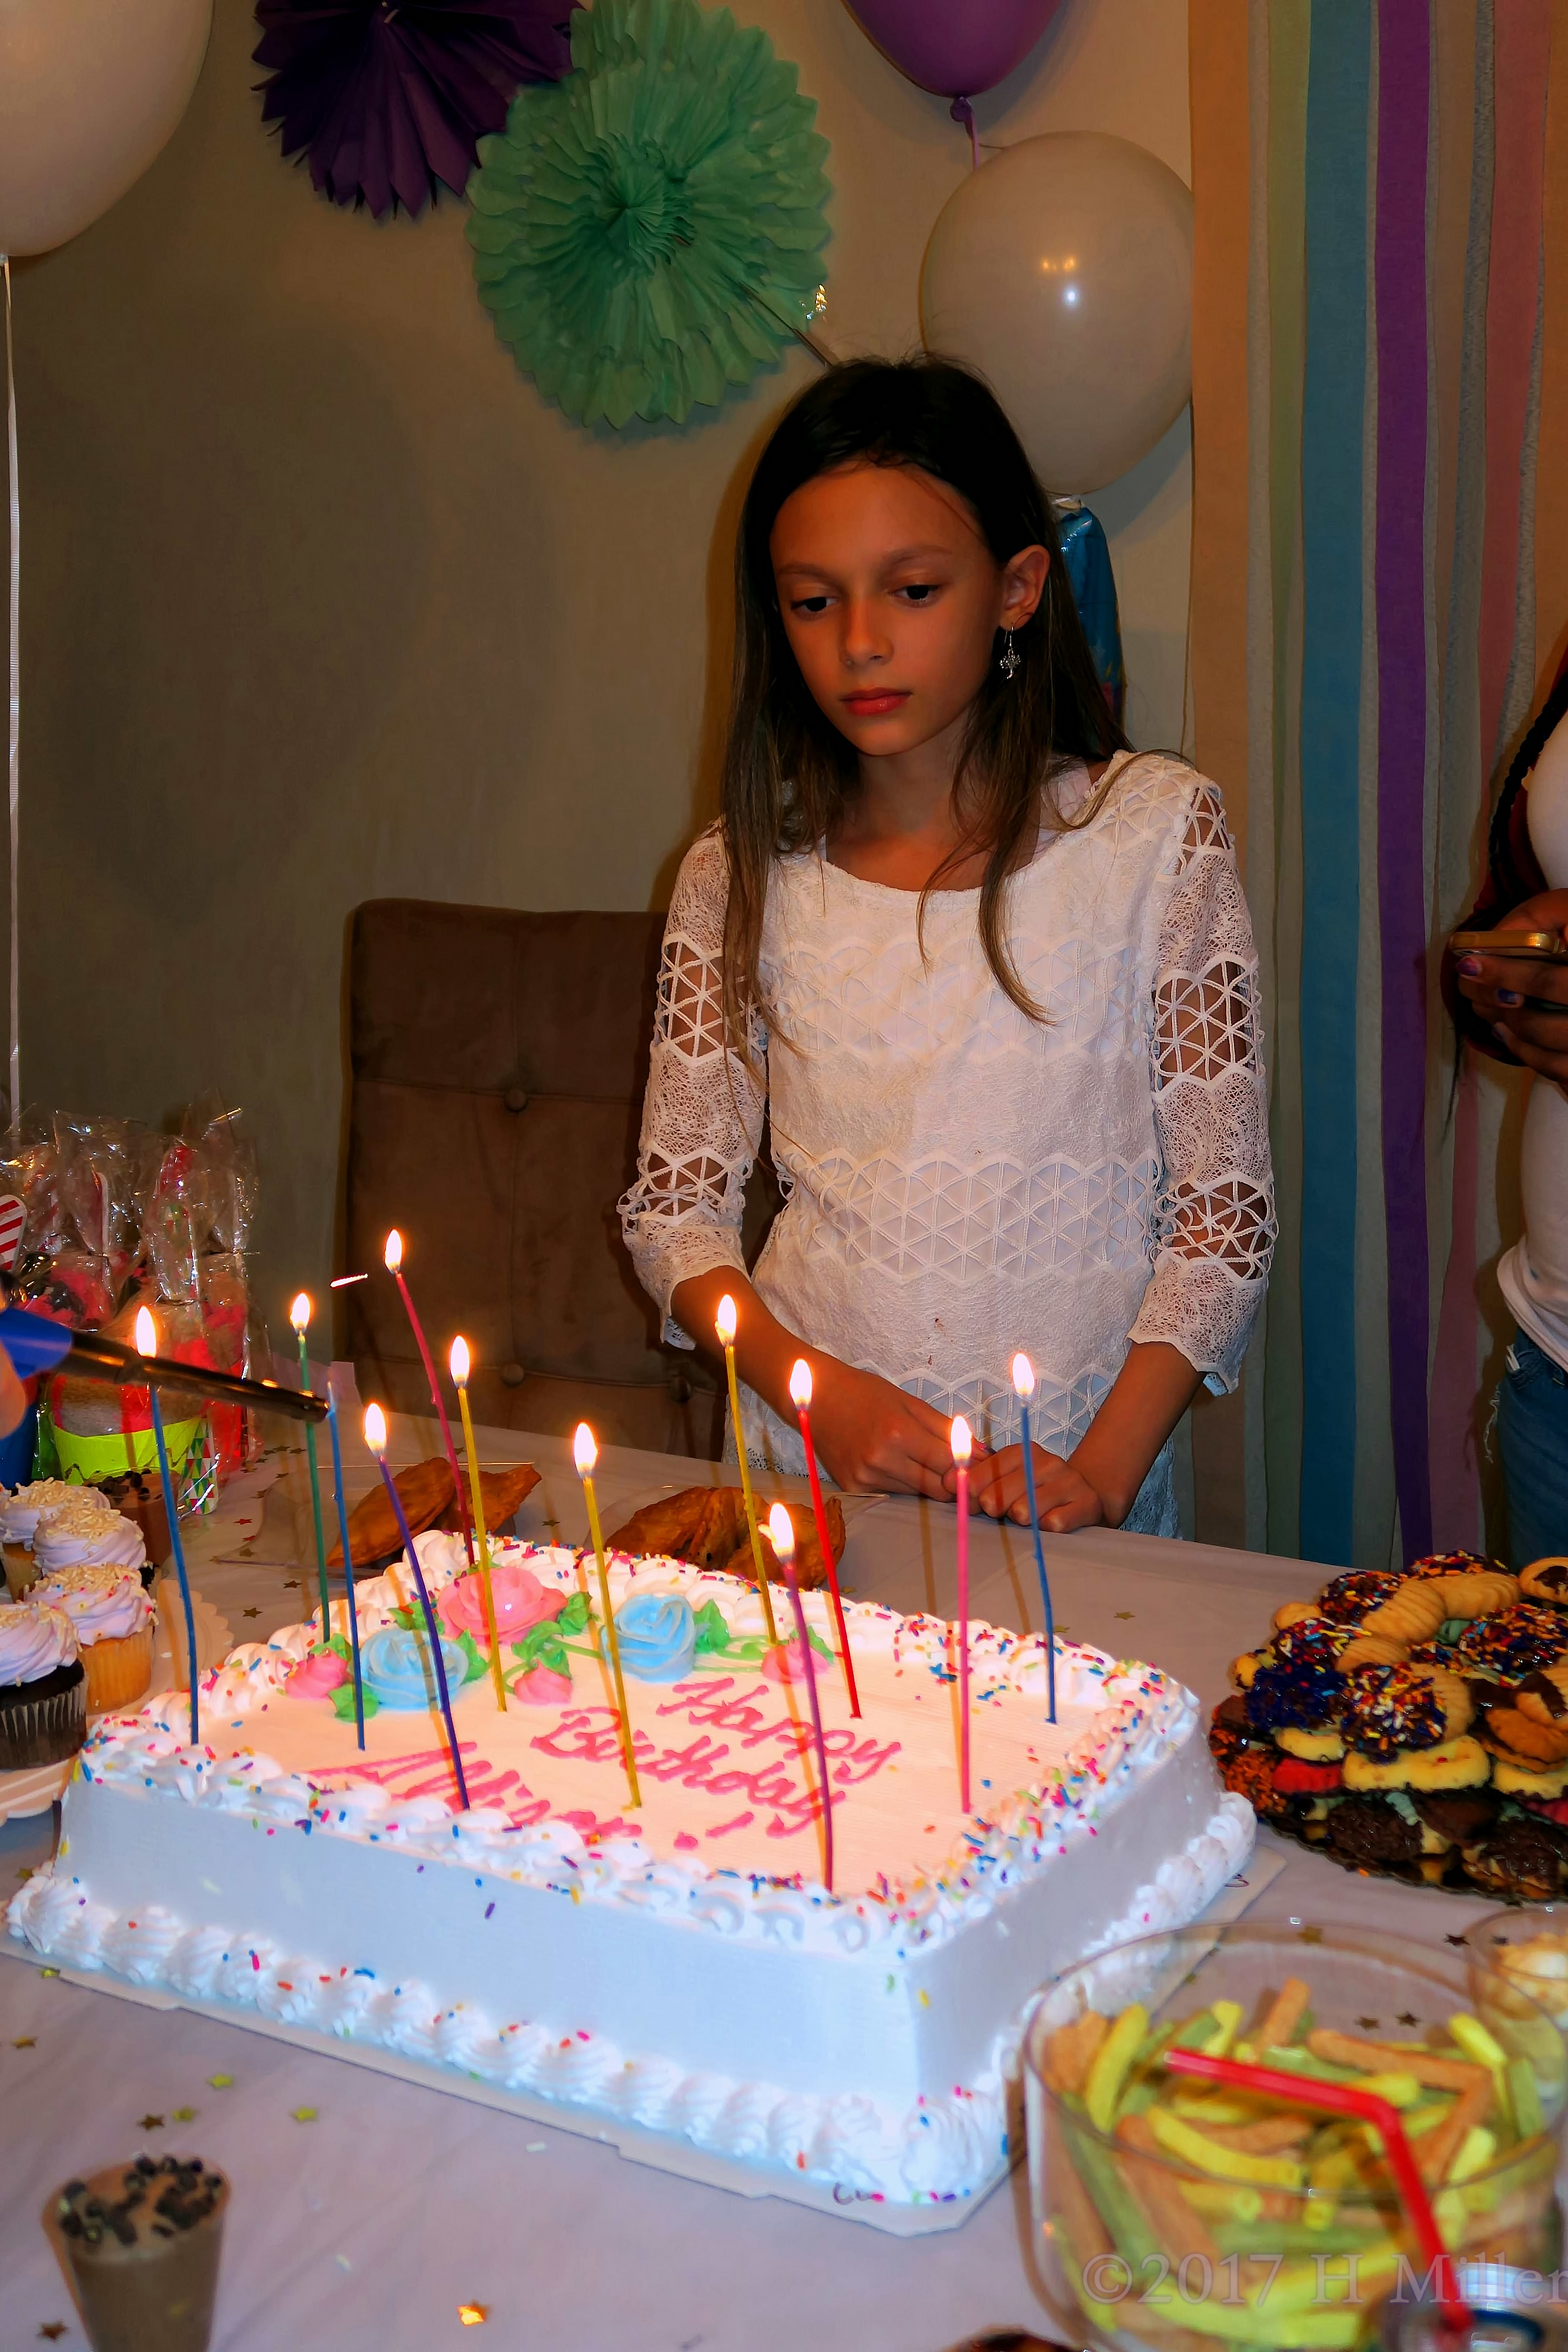 Allison Loves Her Cool Birthday Cake! 